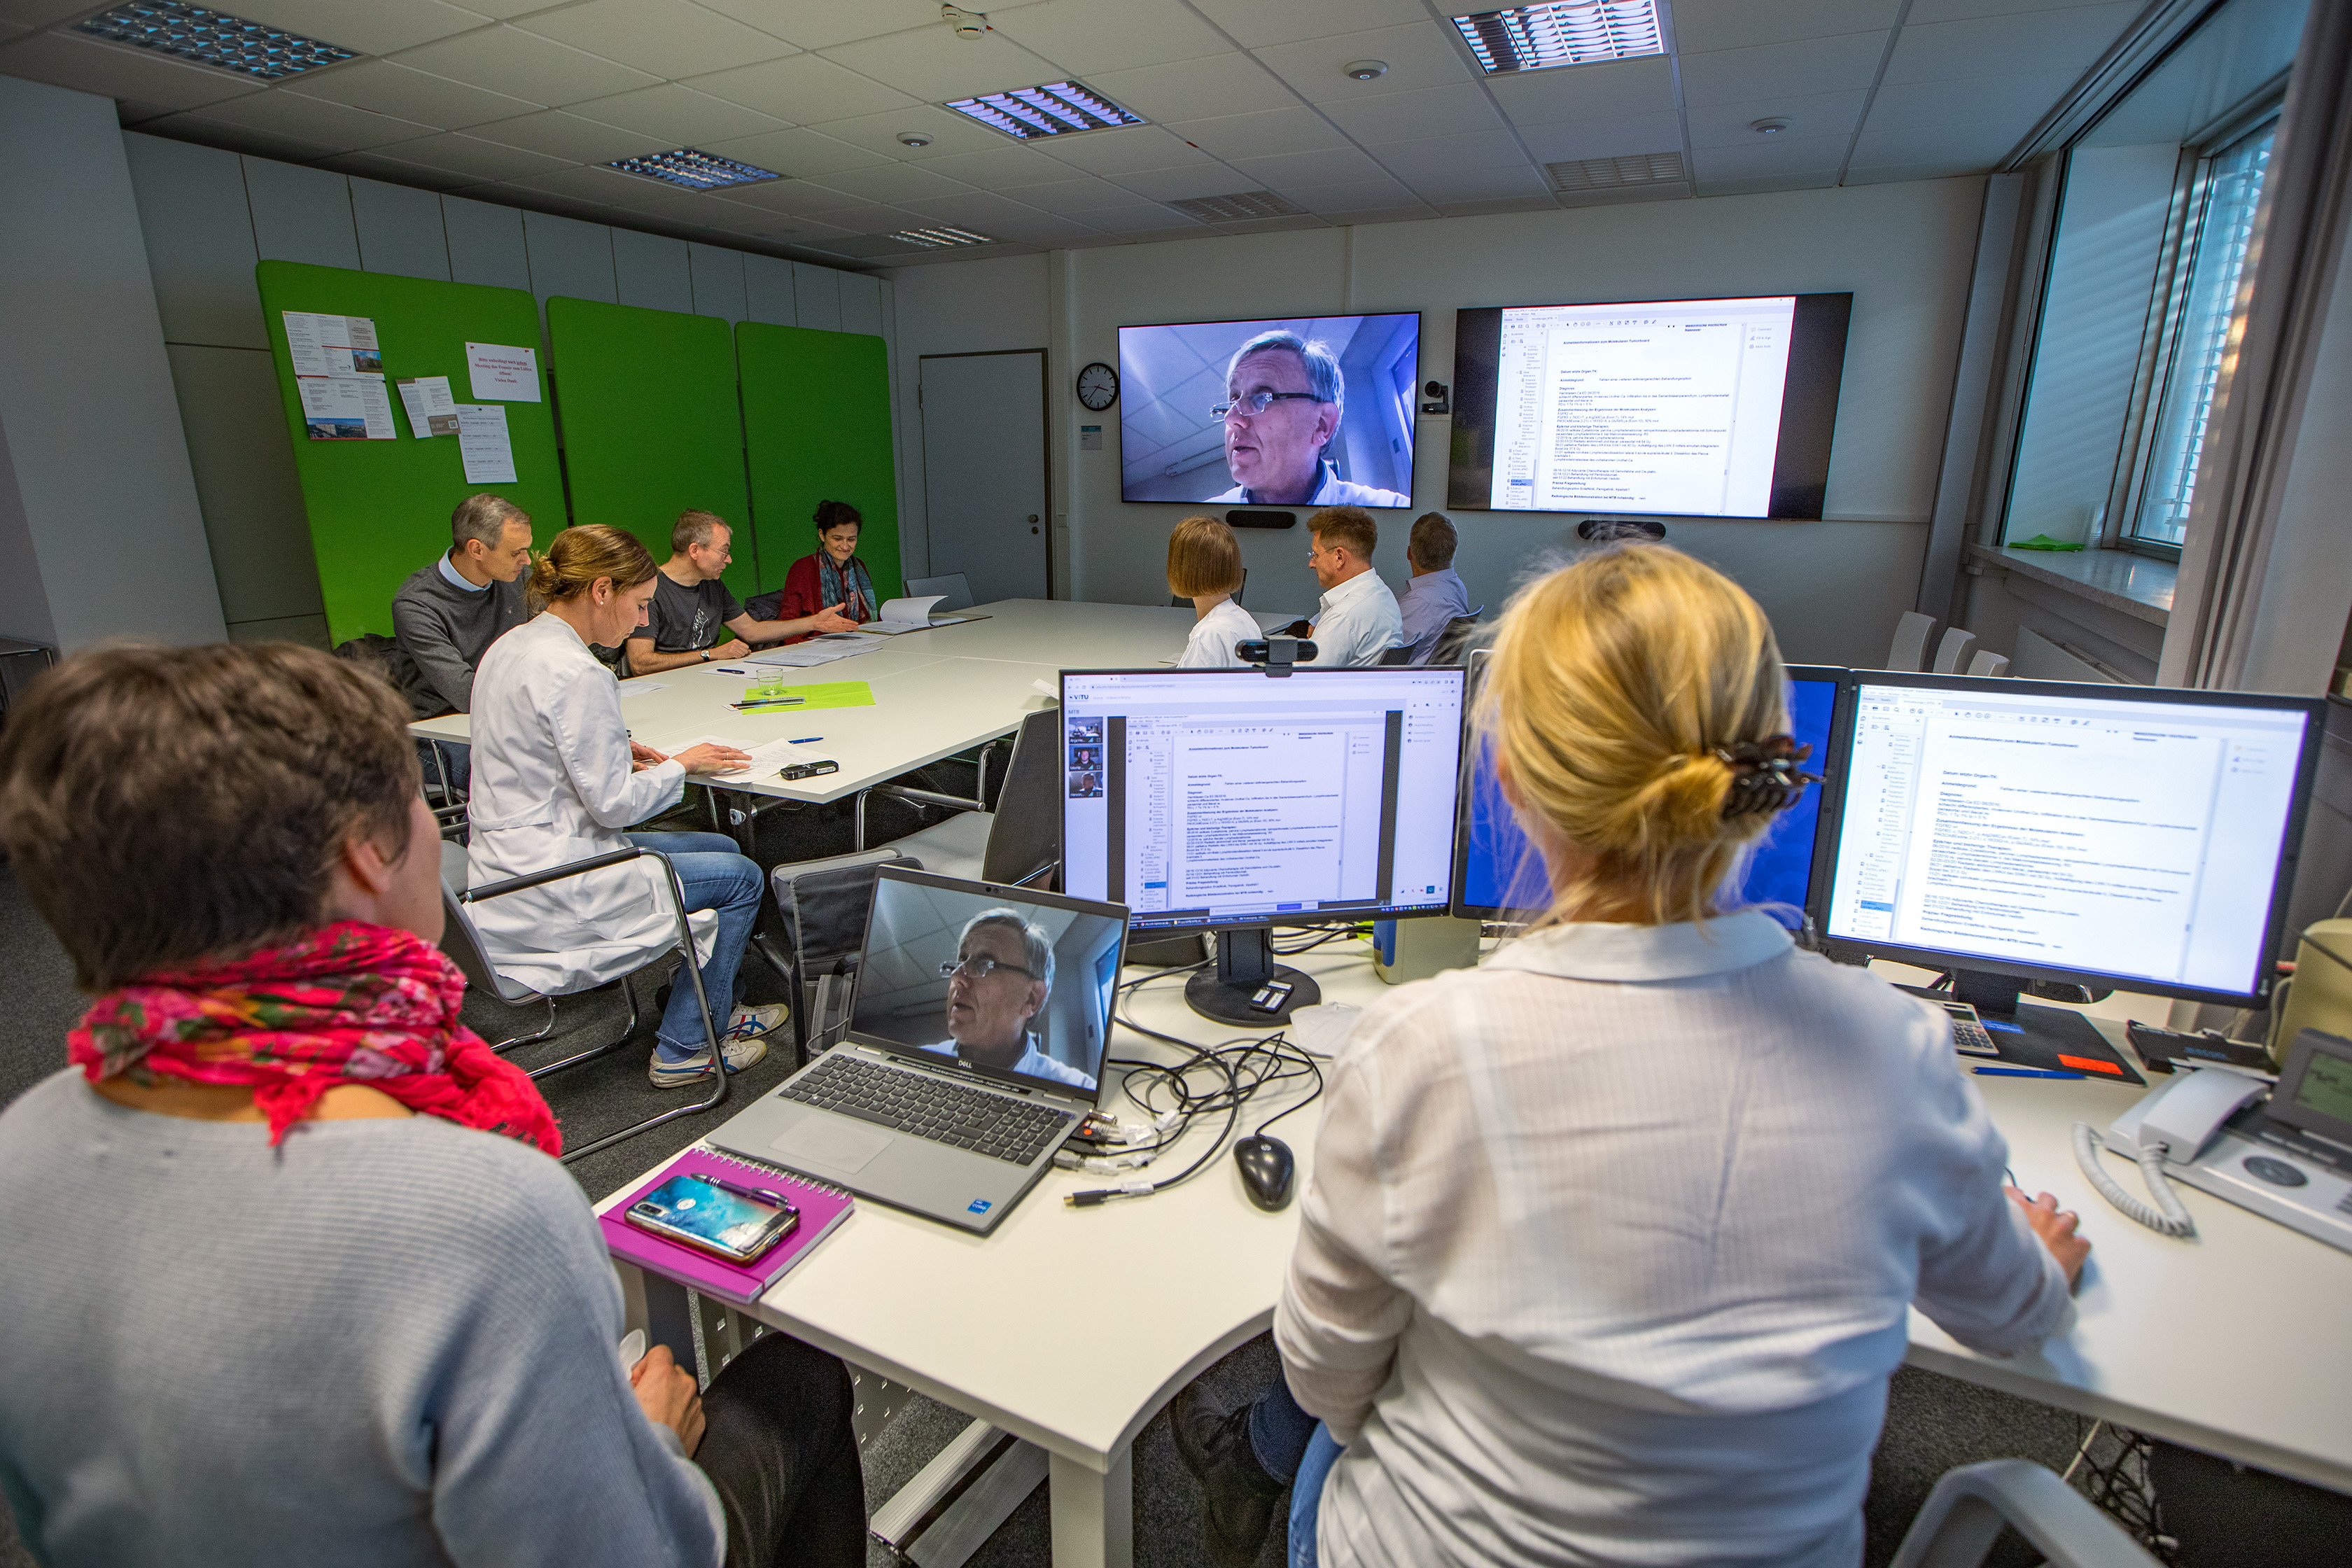 Das Expertenteam, bestehend aus verschiedenen Personen, sitzt in einem Raum, auf Bildschirmen sind Unterlagen zu sehen, eine Person ist über Videokonferenz dazu geschaltet.